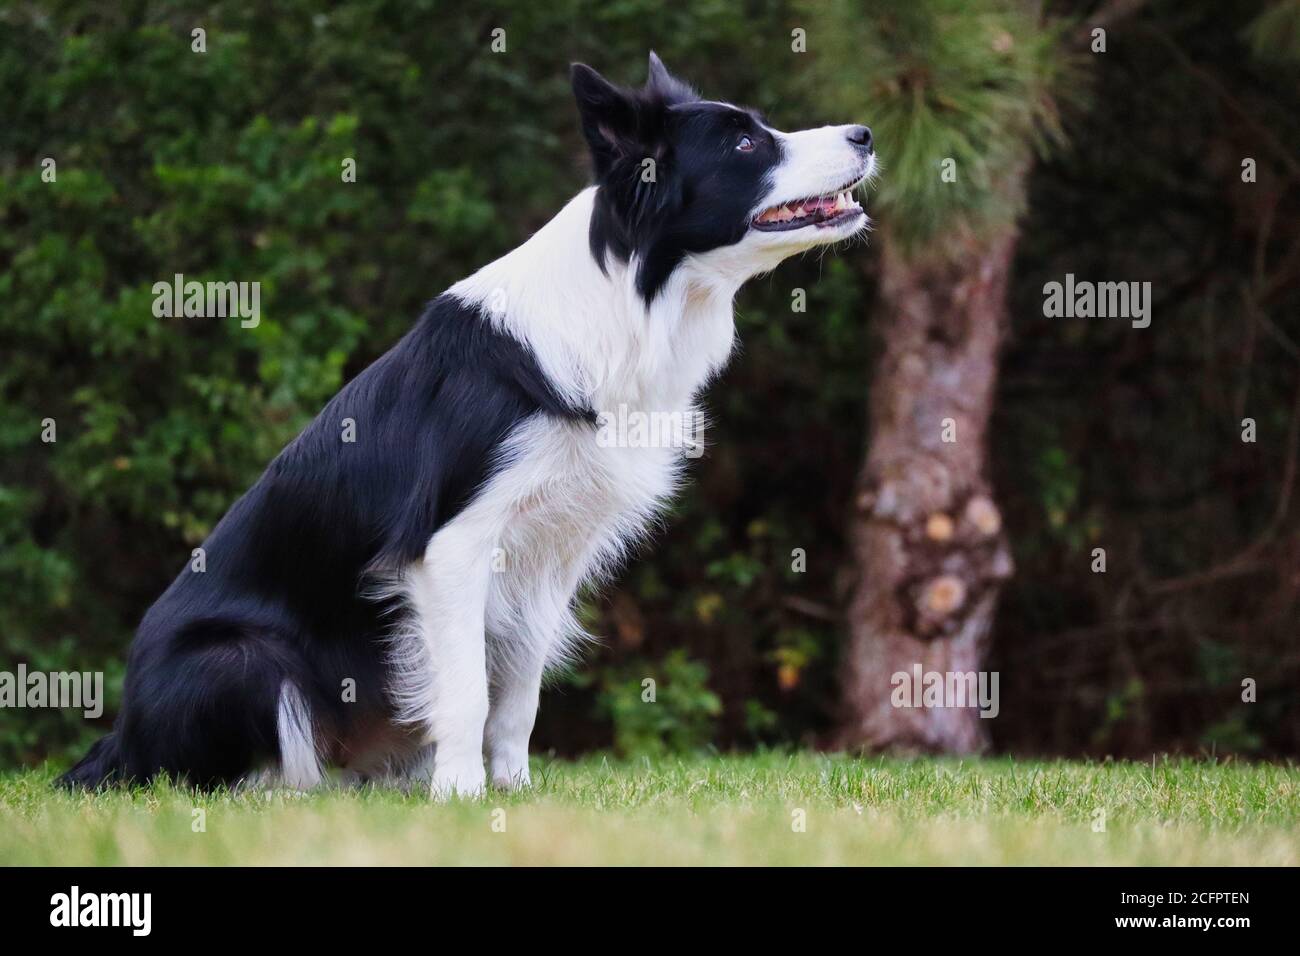 Border Collie sitzt im Garten und beobachtet ihren Mann. Schwarz-weißer Hund wartet auf ihre Befehle. Hundeausbildung Gehorsam im Park. Stockfoto